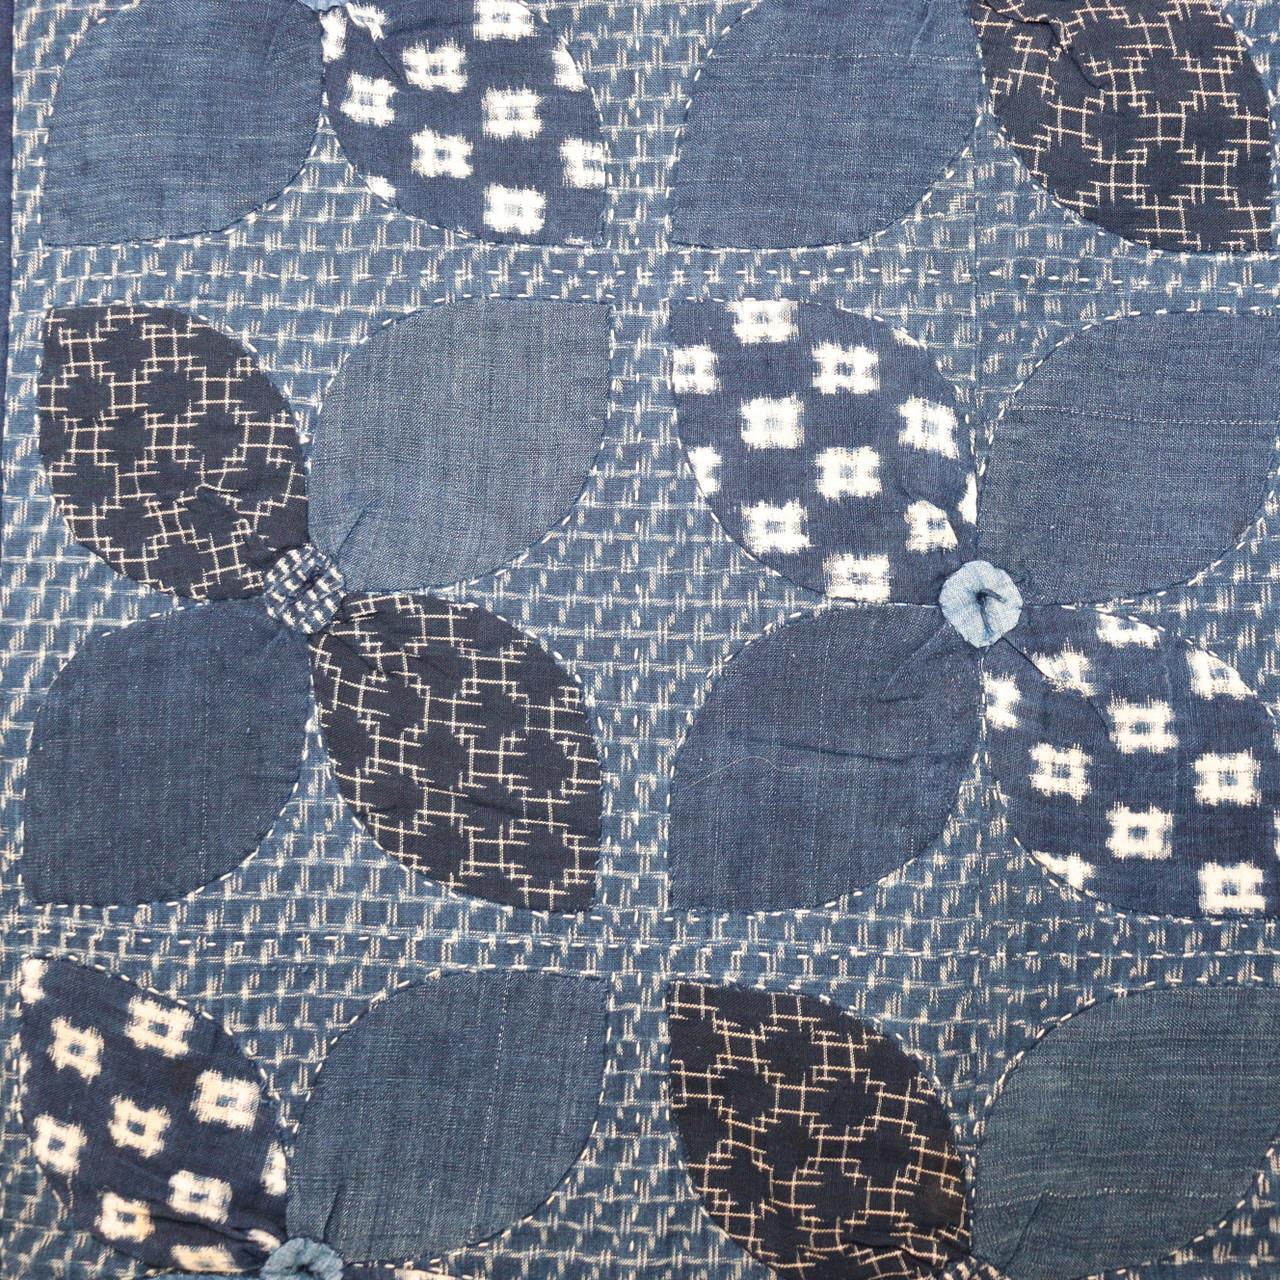 Japanese Antique Cotton cloth Rugs Mats Kousa dogwood Flower Design handmade